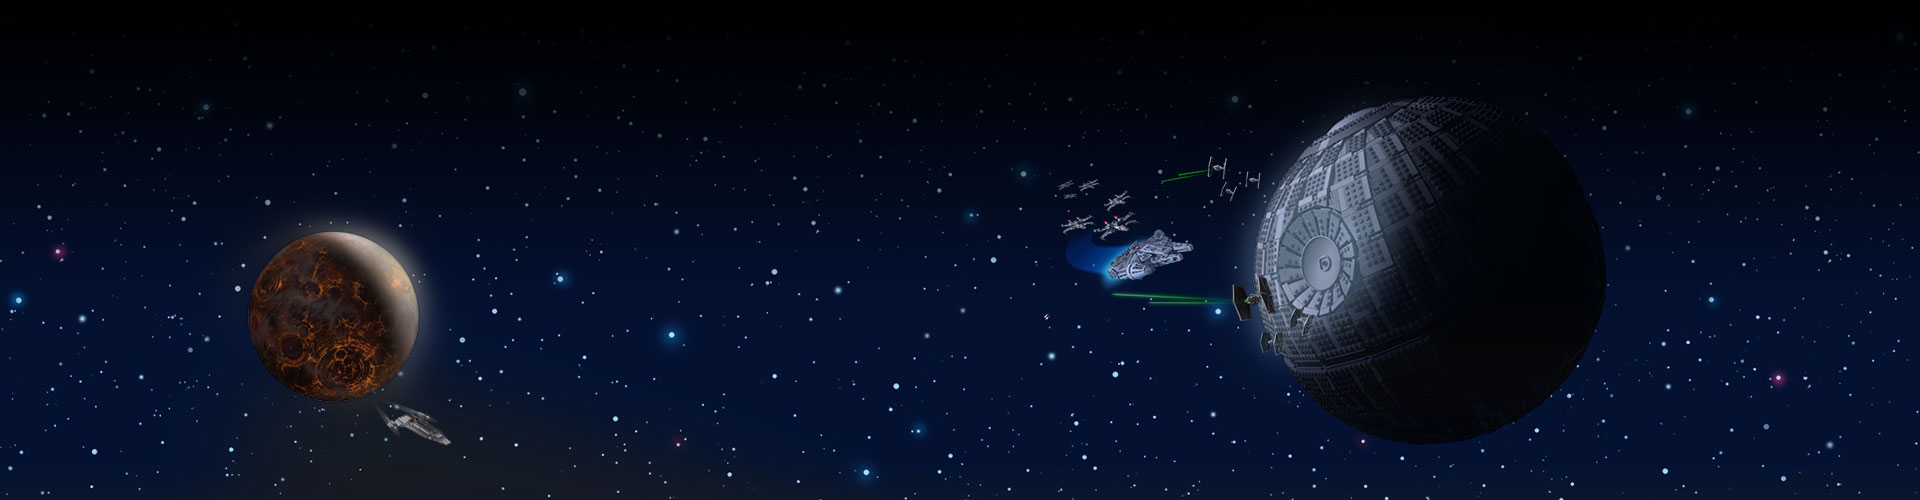 星空背景下太空中的两个敌对基地。